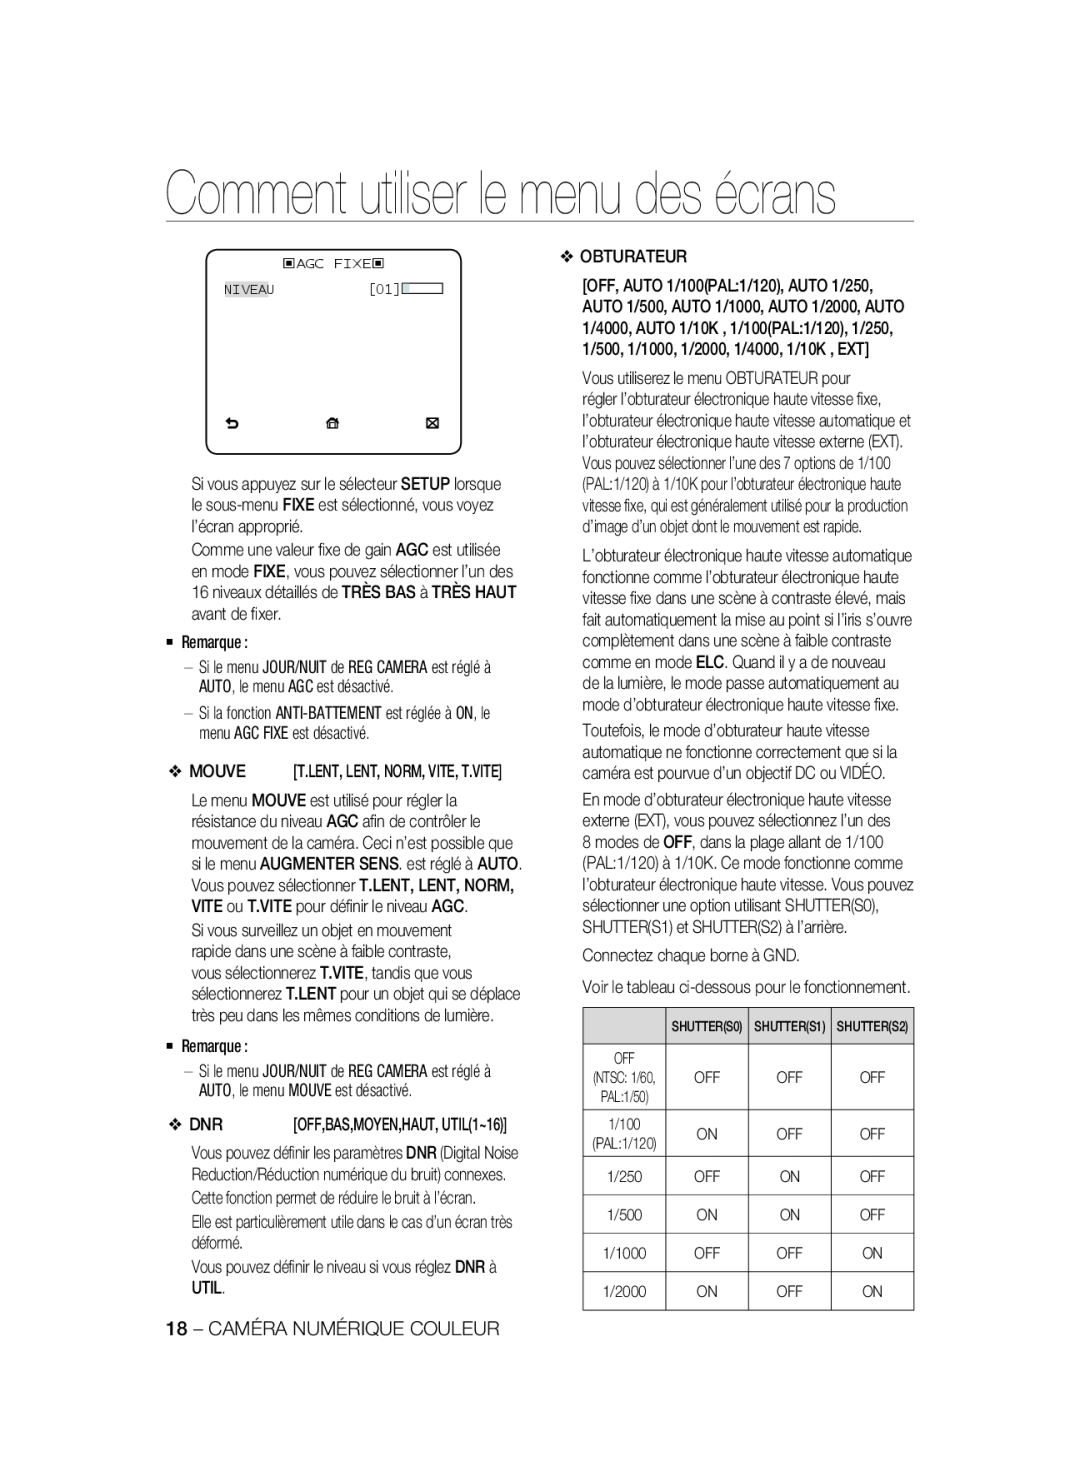 Samsung SCC-A2333P, SCC-A2033P manual Comment utiliser le menu des écrans, ‹AGC FIXE‹ NIVEAU01 